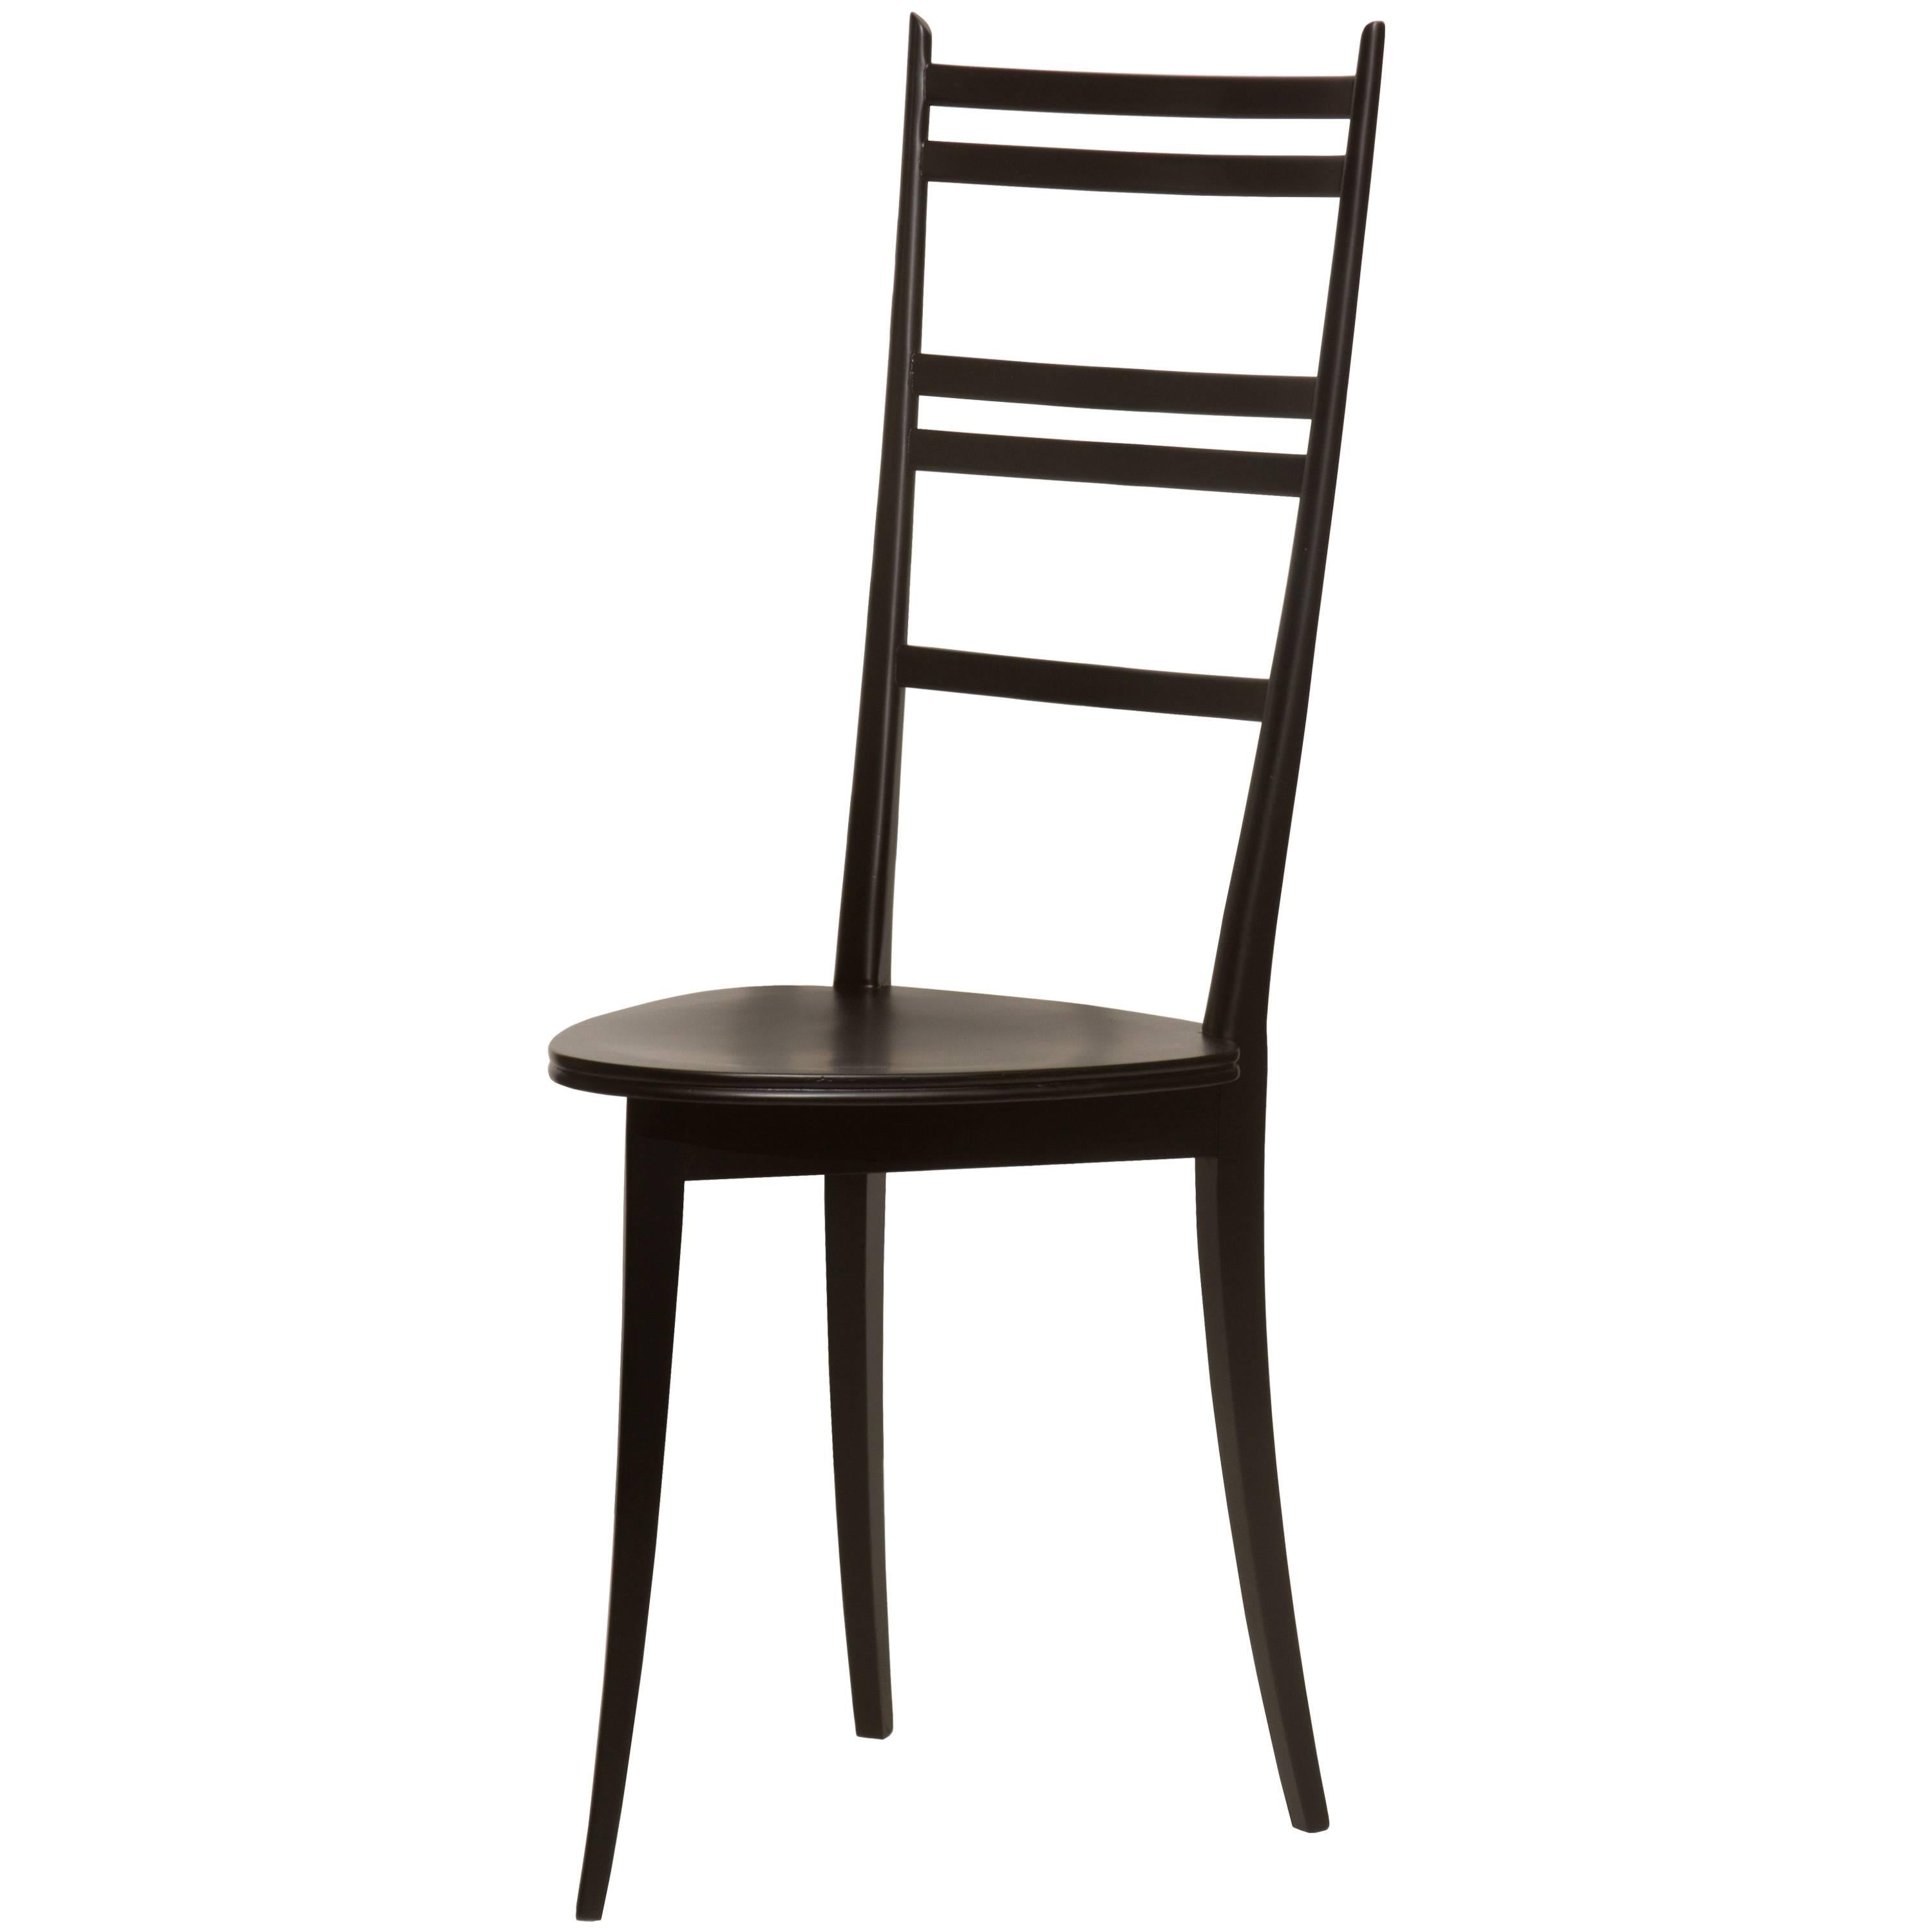 Italian Three Legged Chair For Sale